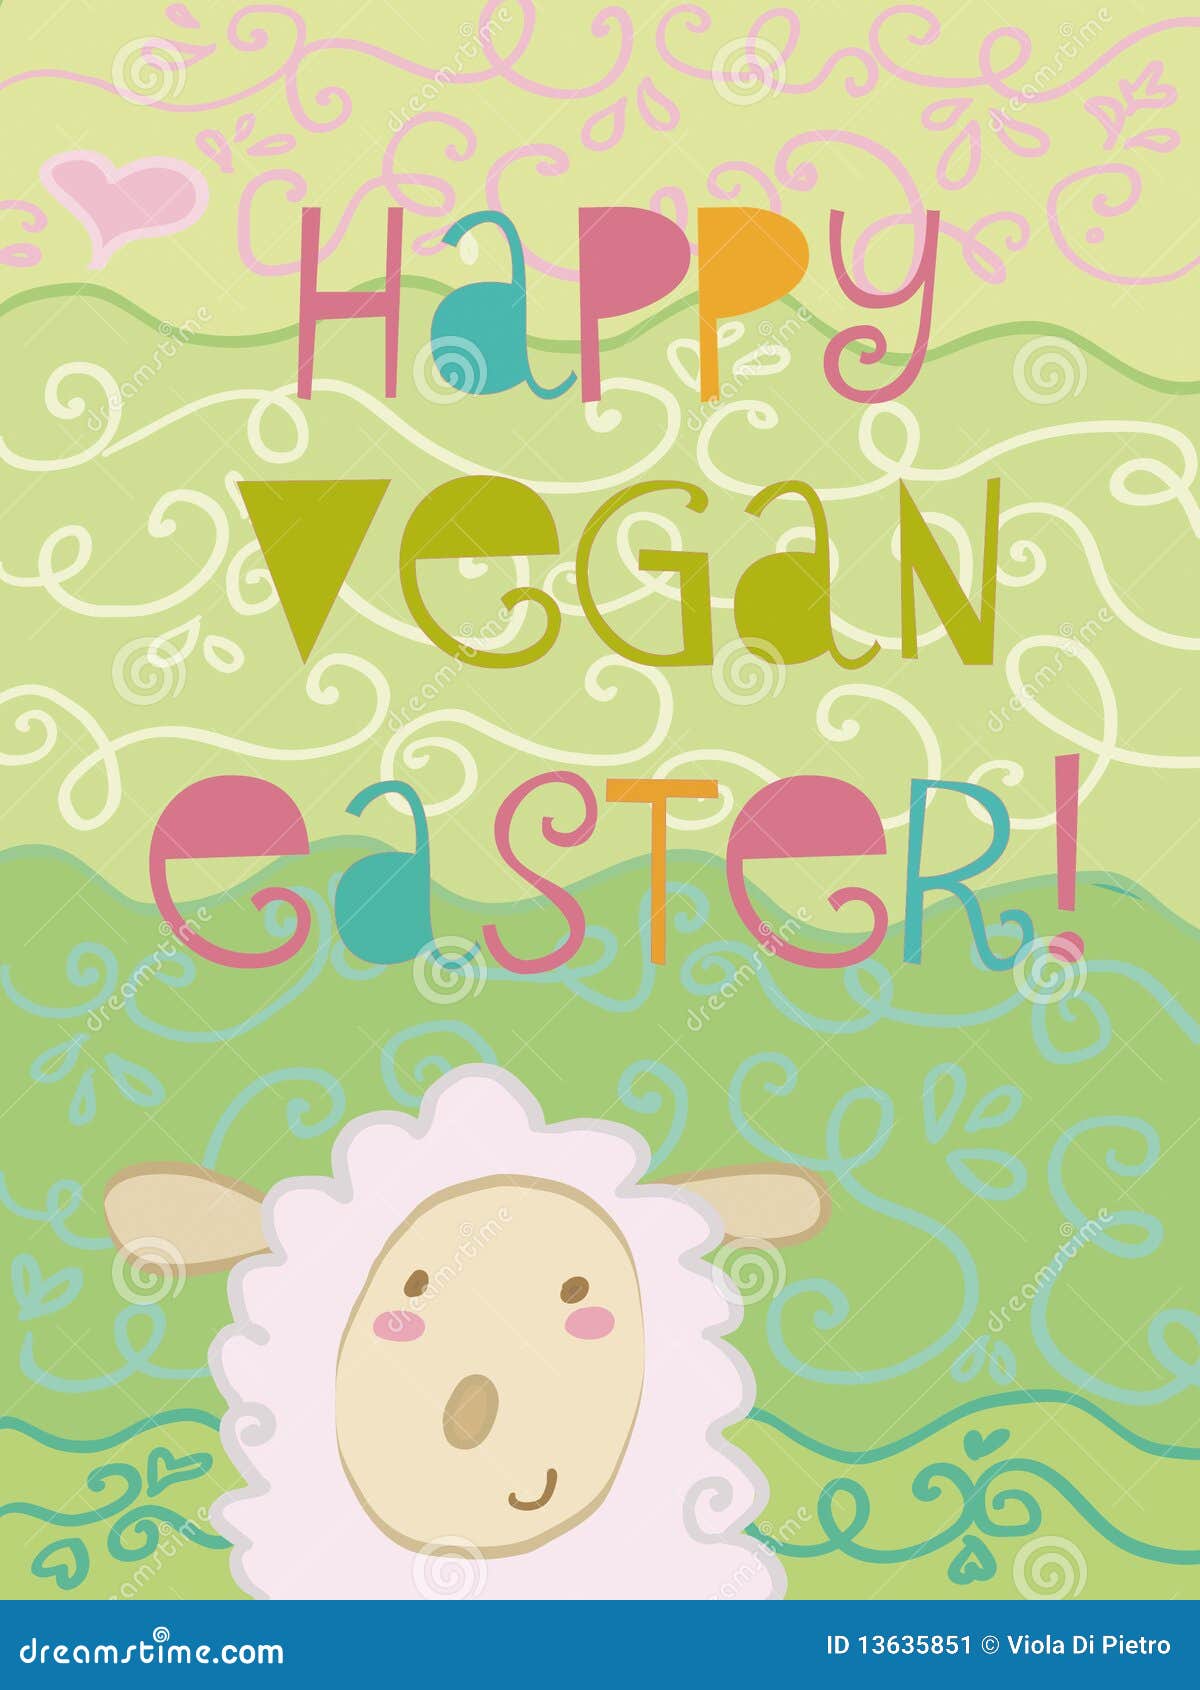 happy-vegan-easter-13635851.jpg